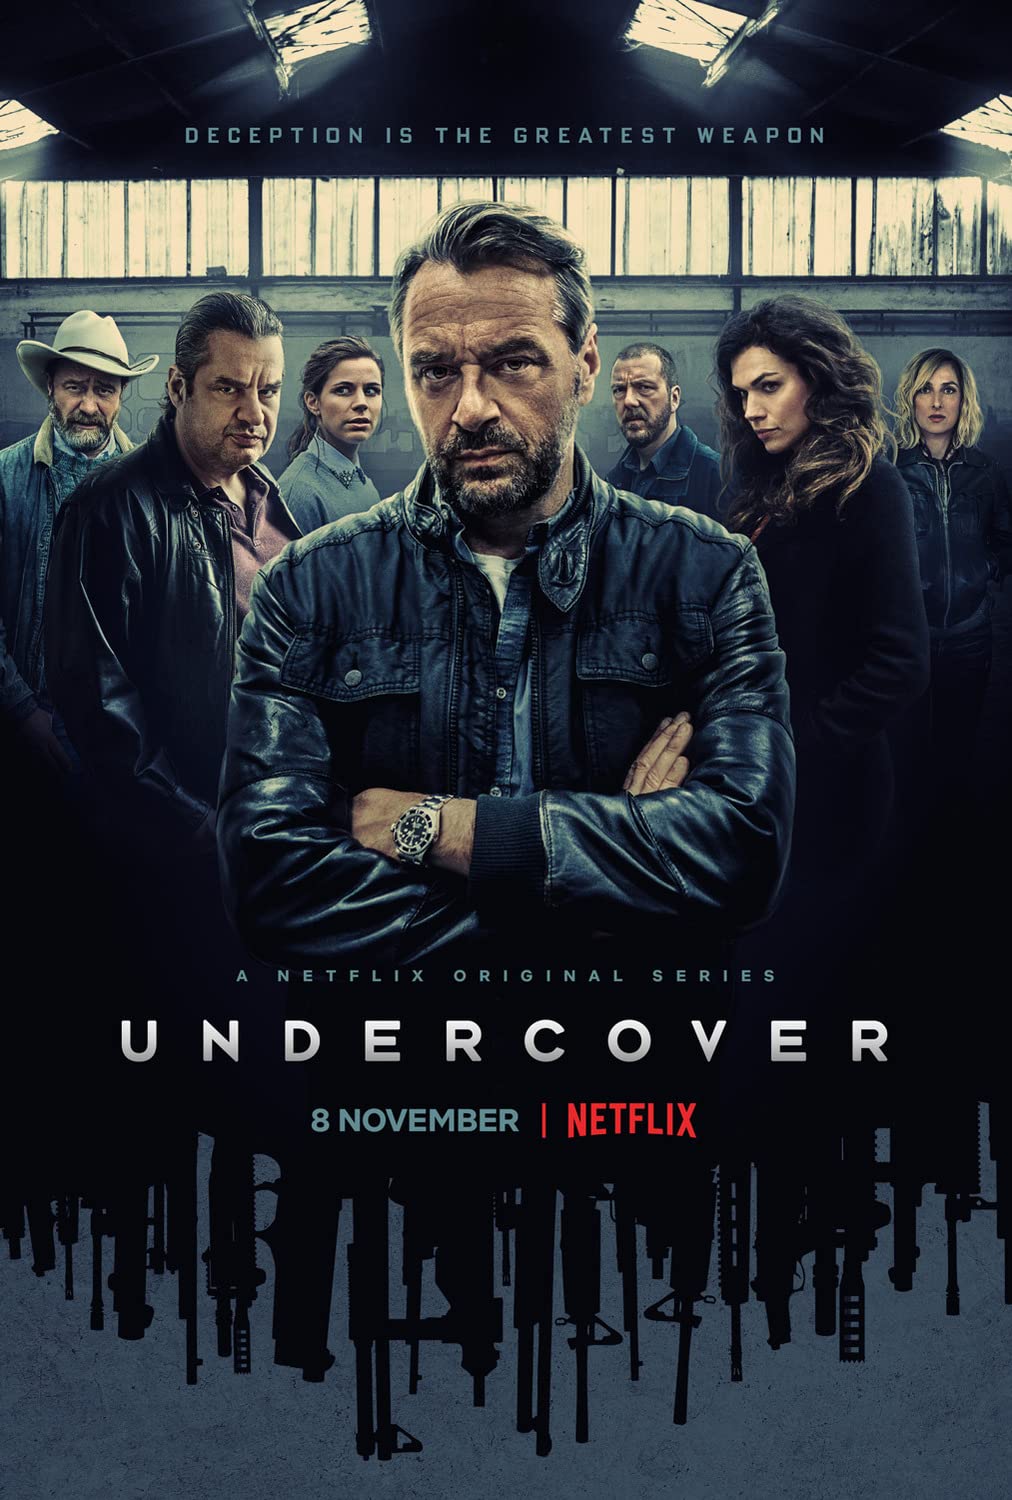 Undercover Season 02 (2020) ปฏิบัติการซ้อนเงา